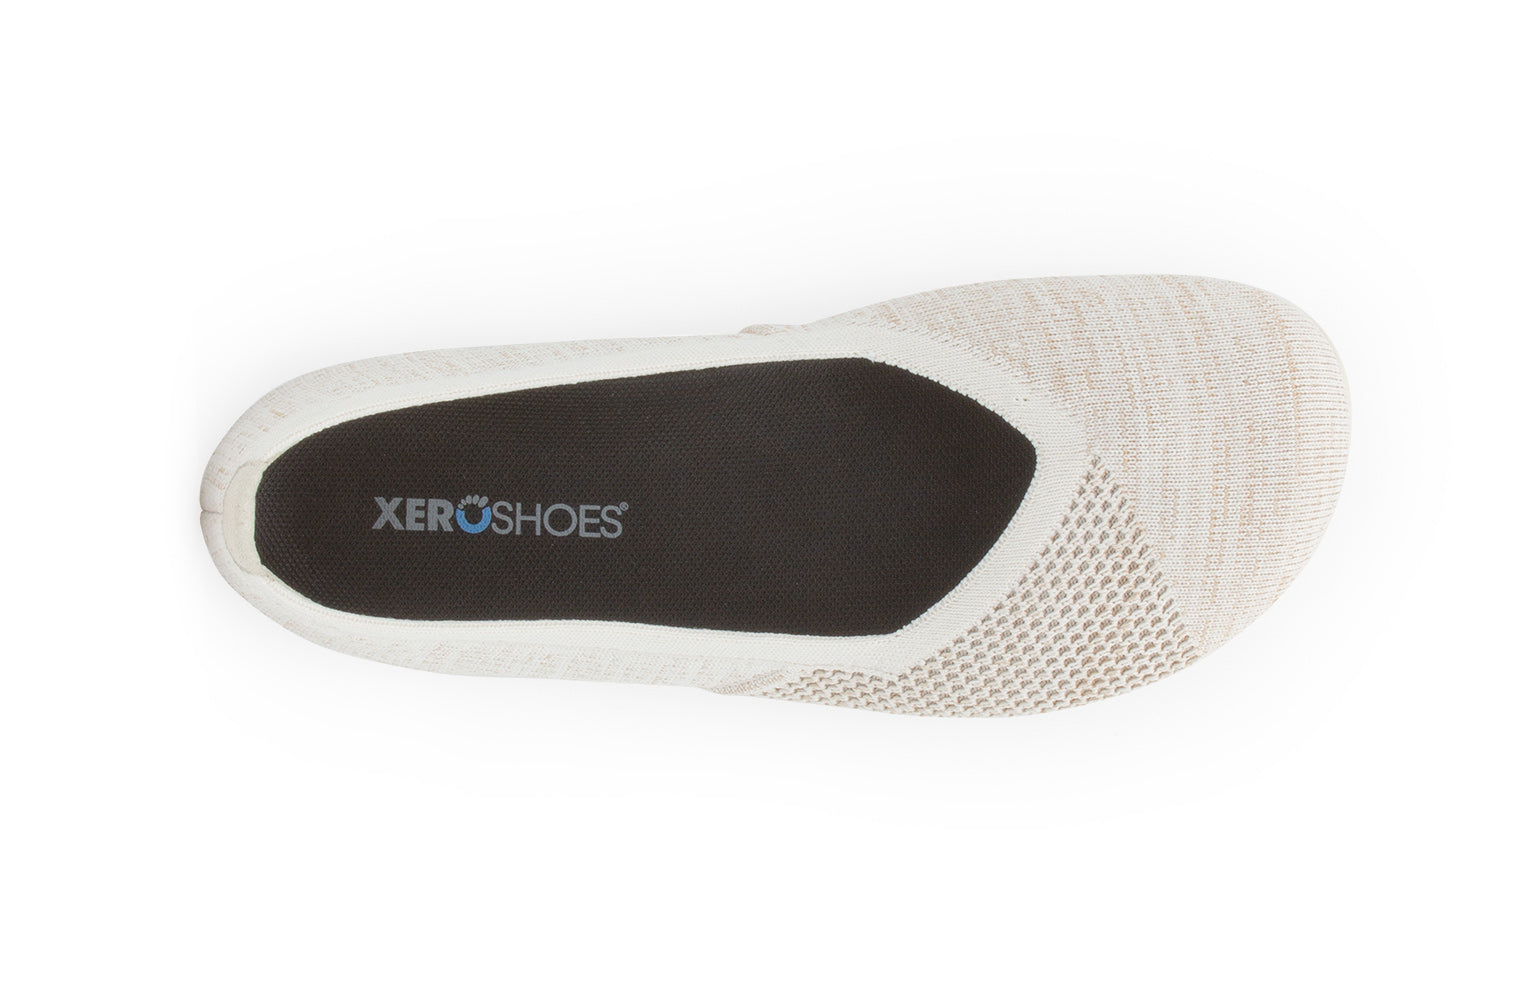 Xero Shoes Phoenix Knit Womens barfods ballerinaer til kvinder i farven cream, top